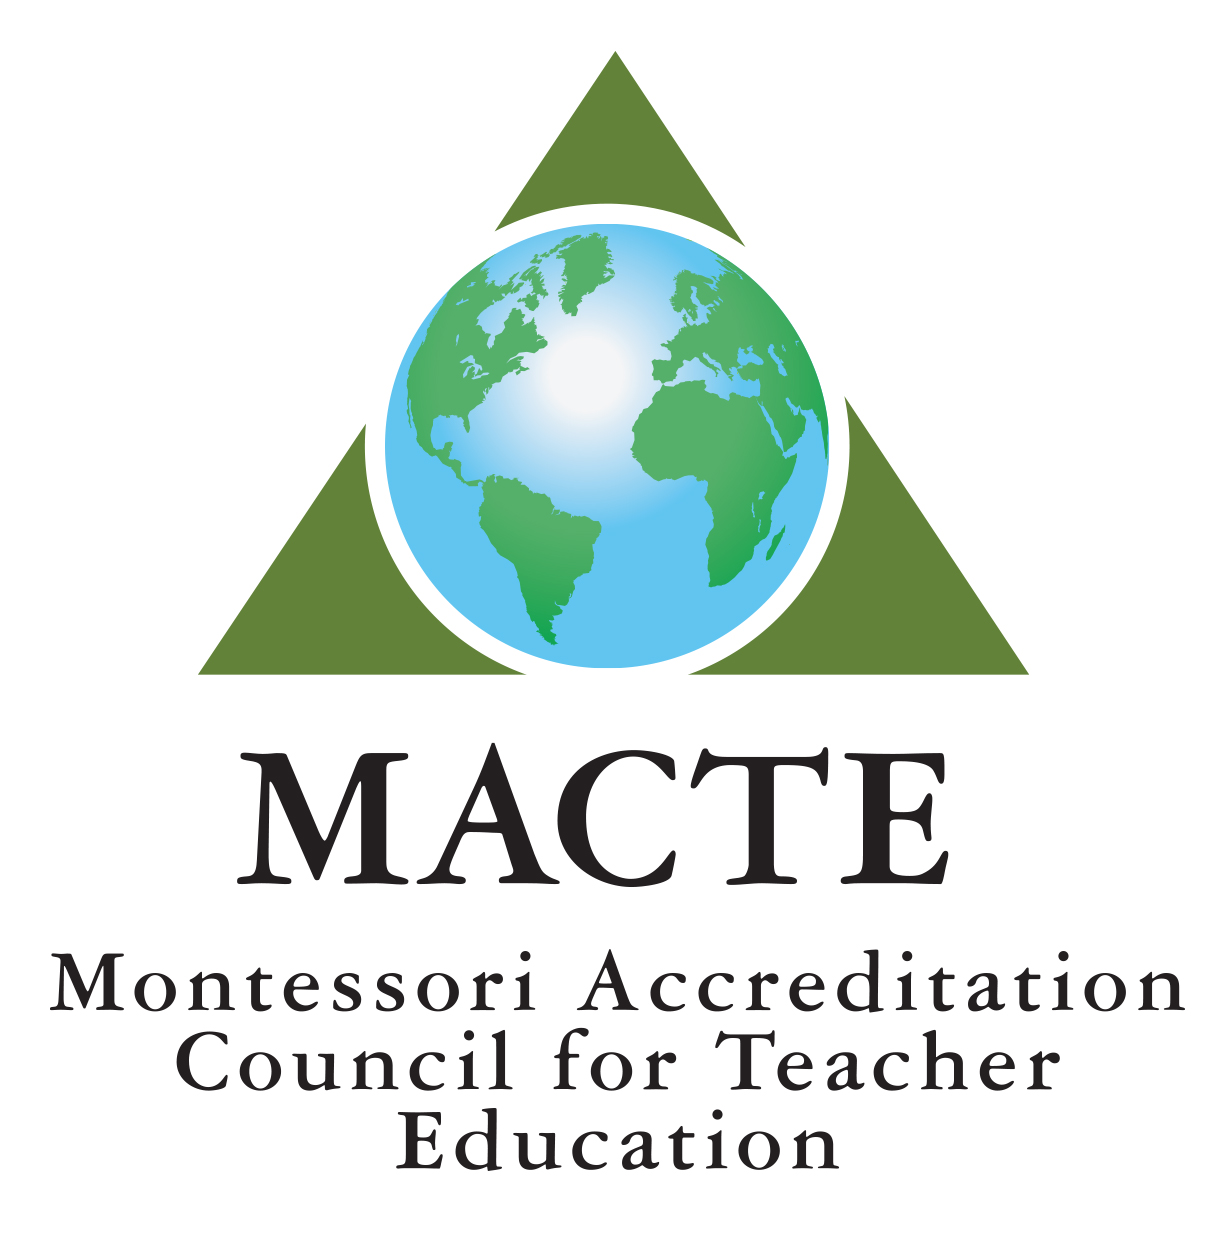 Montessori Accreditation Council for Teacher Education